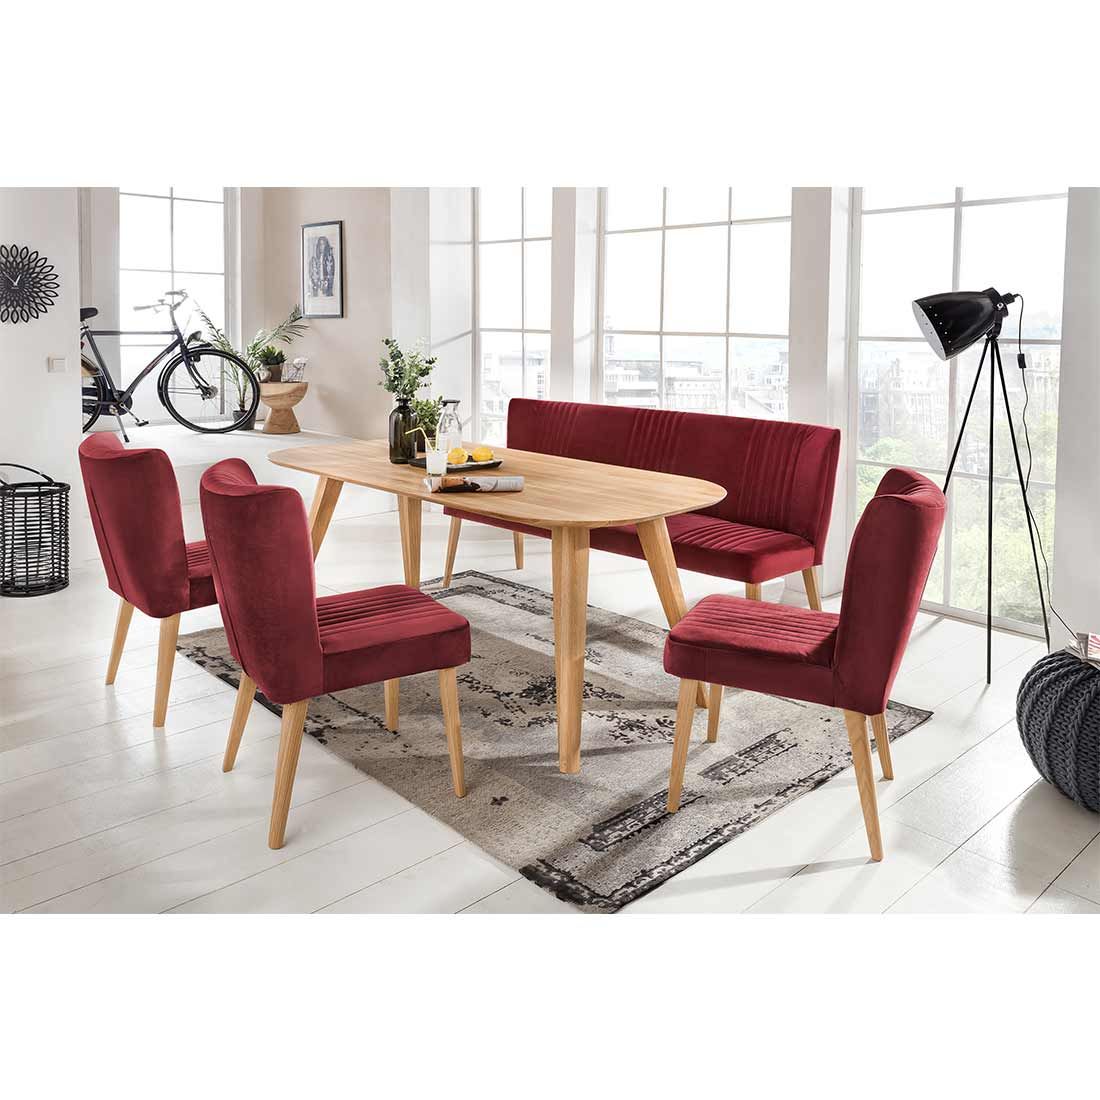 Standard Furniture Ottawa Esstisch 200x100cm